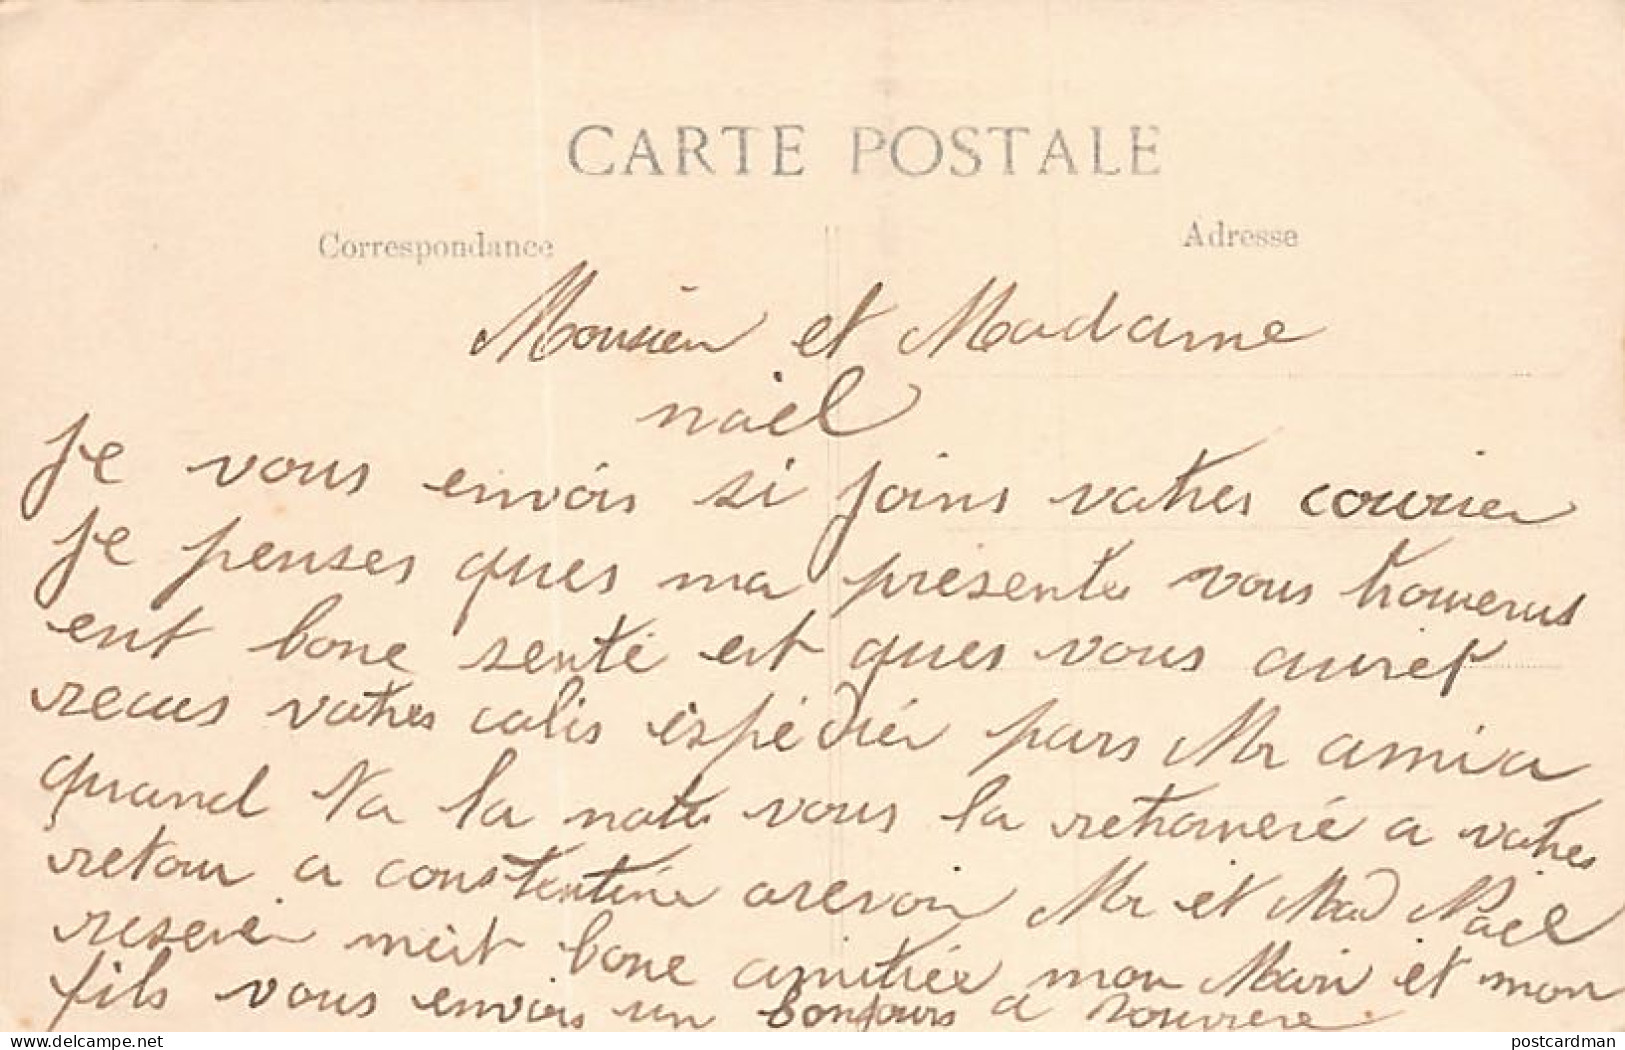 Algérie - CONSTANTINE - La Gendarmerie - Ed. Collection Idéale P.S. 16 - Constantine